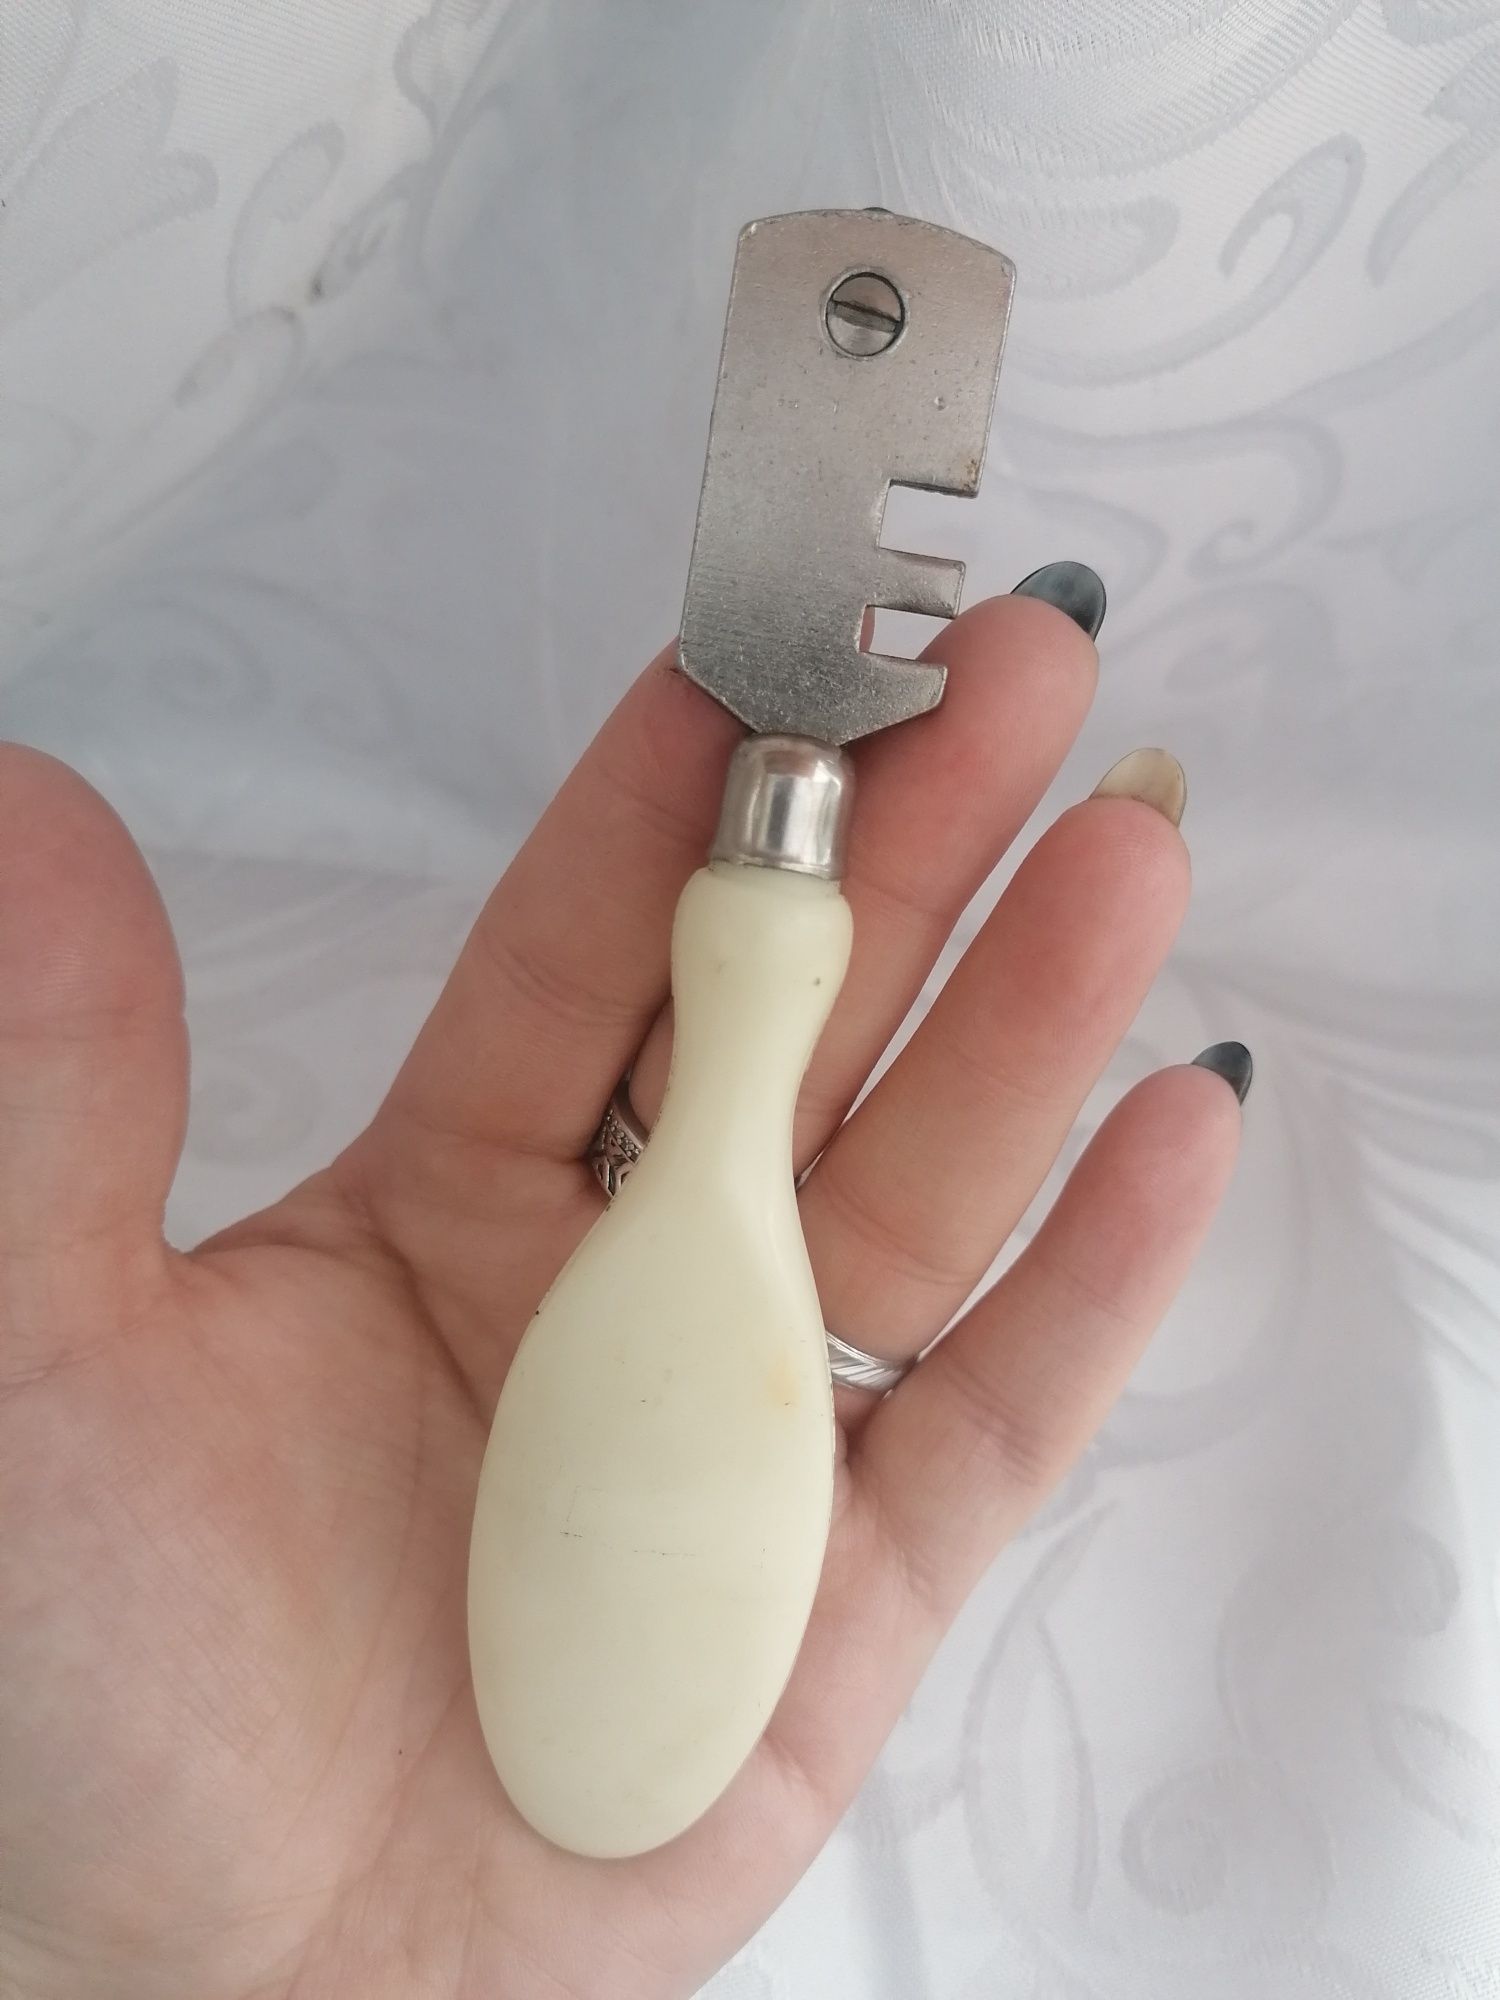 Stary ciekawy nóż nożyk diamentowy do szyb polecam